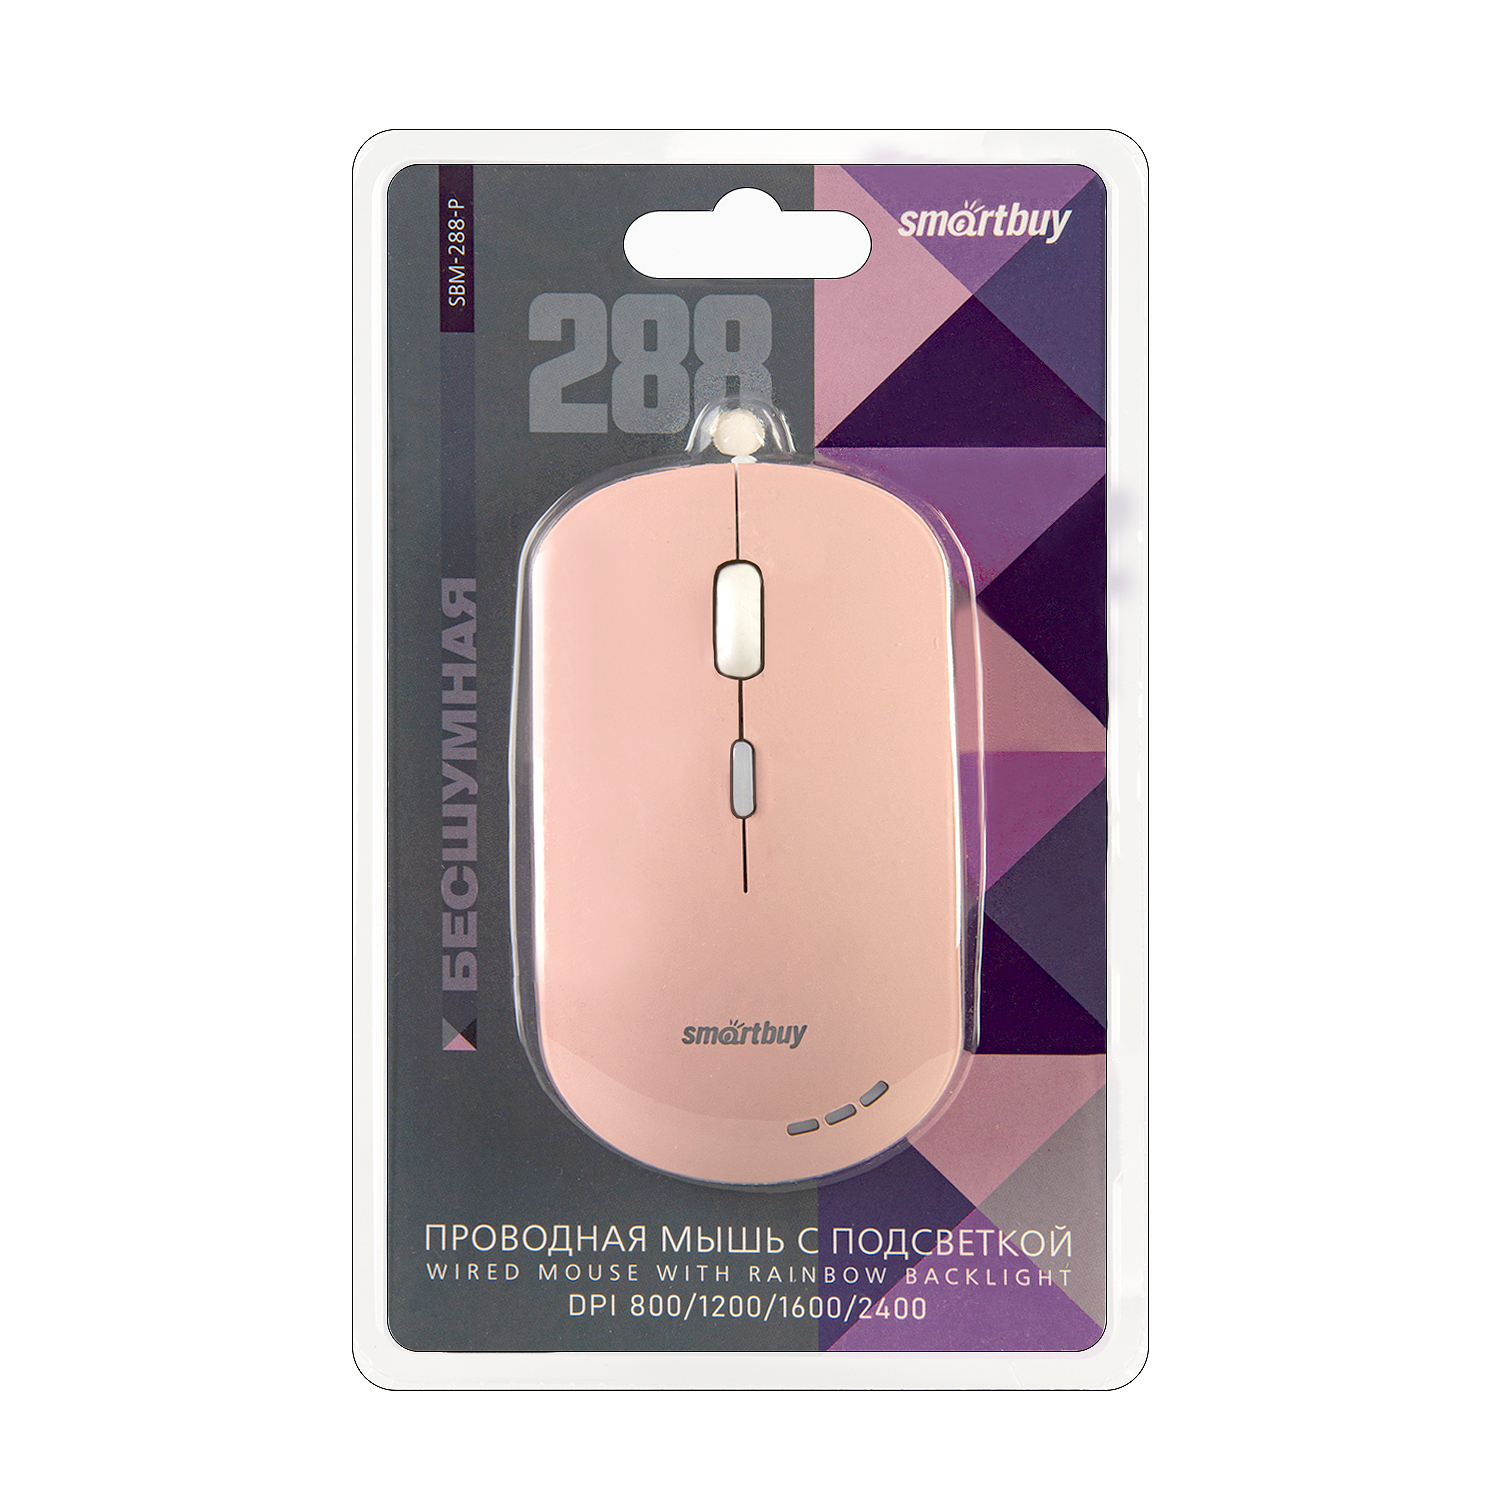 Мышь проводная беззвучная с подсветкой Smartbuy 288 розовая (SBM-288-P) / 40